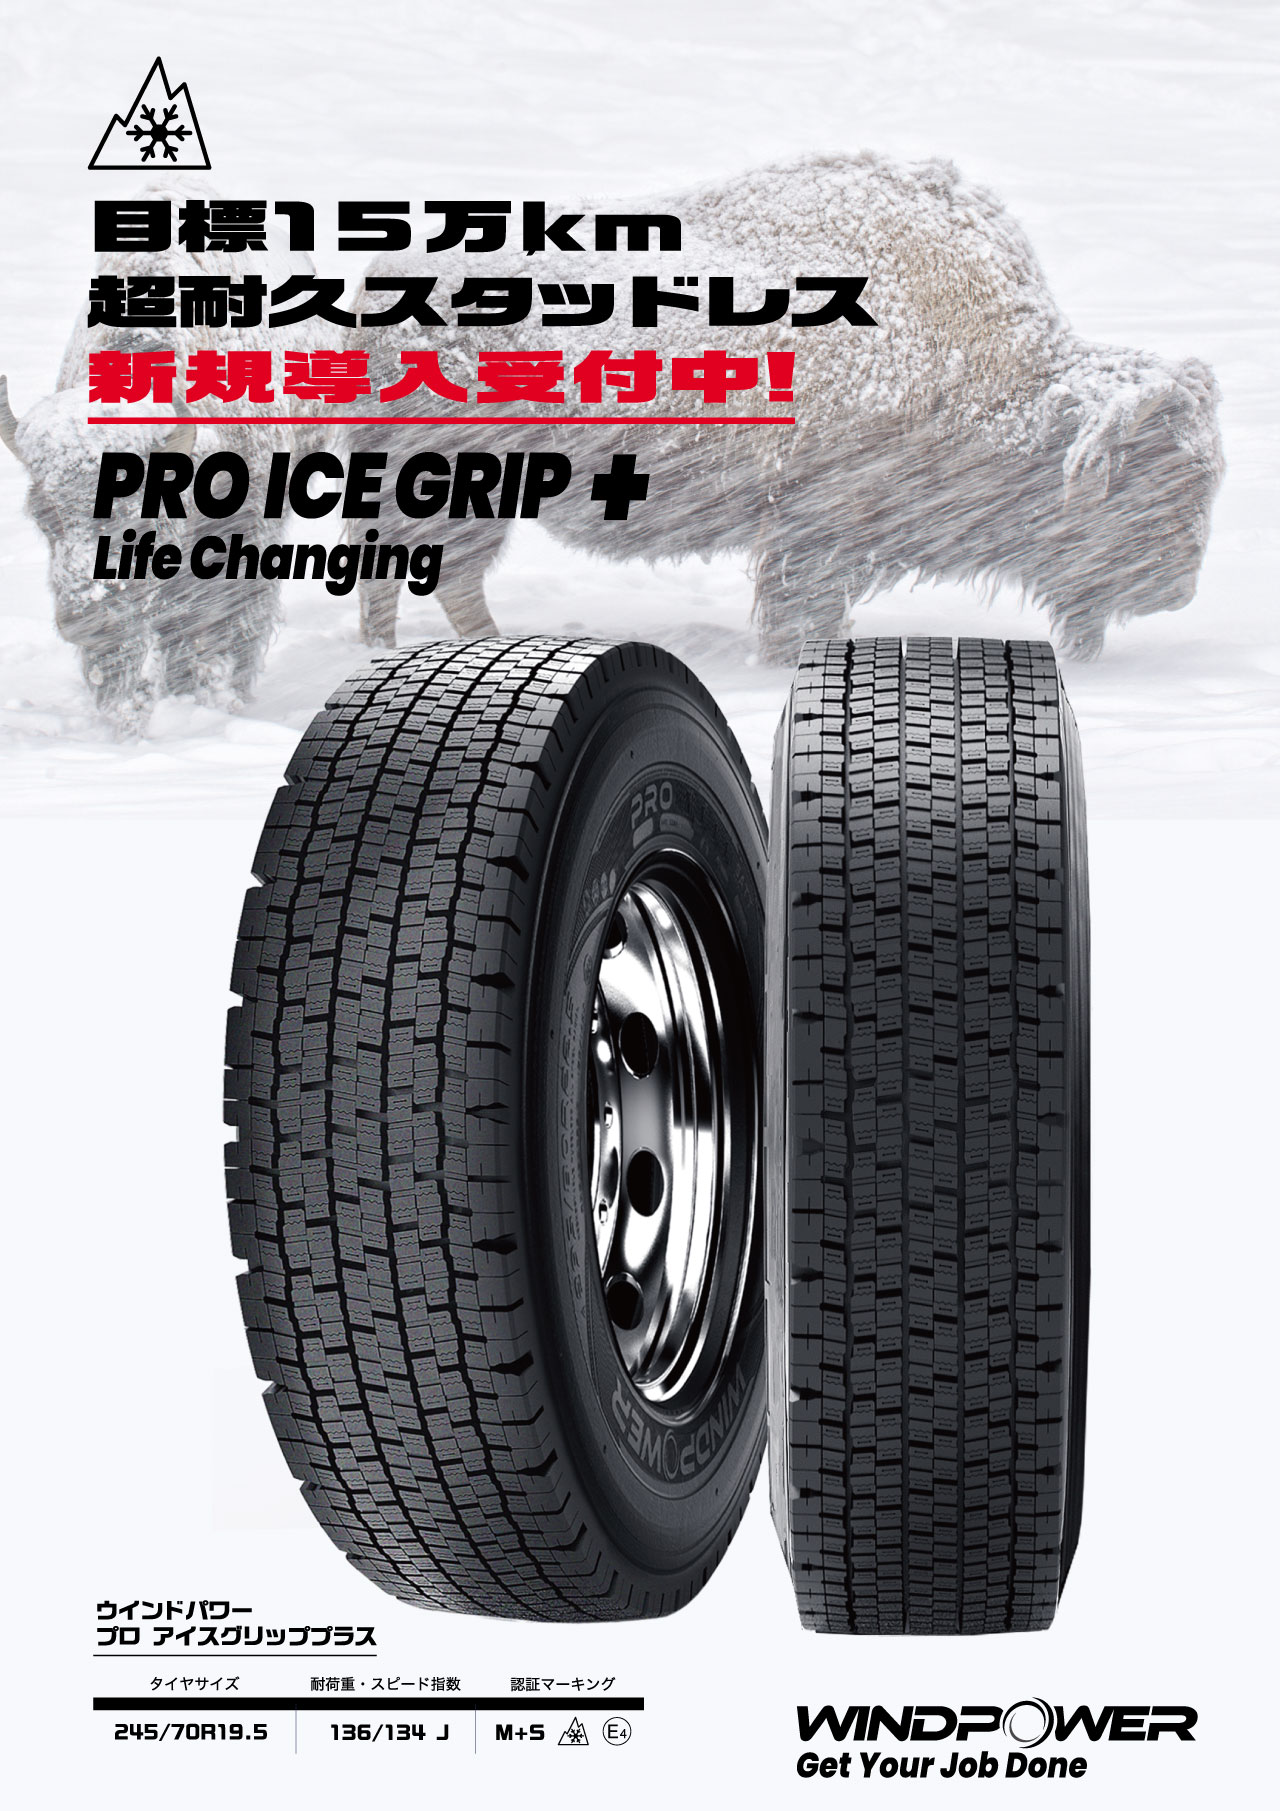 超耐久スタッドレス『PRO ICE GRIP+』発売